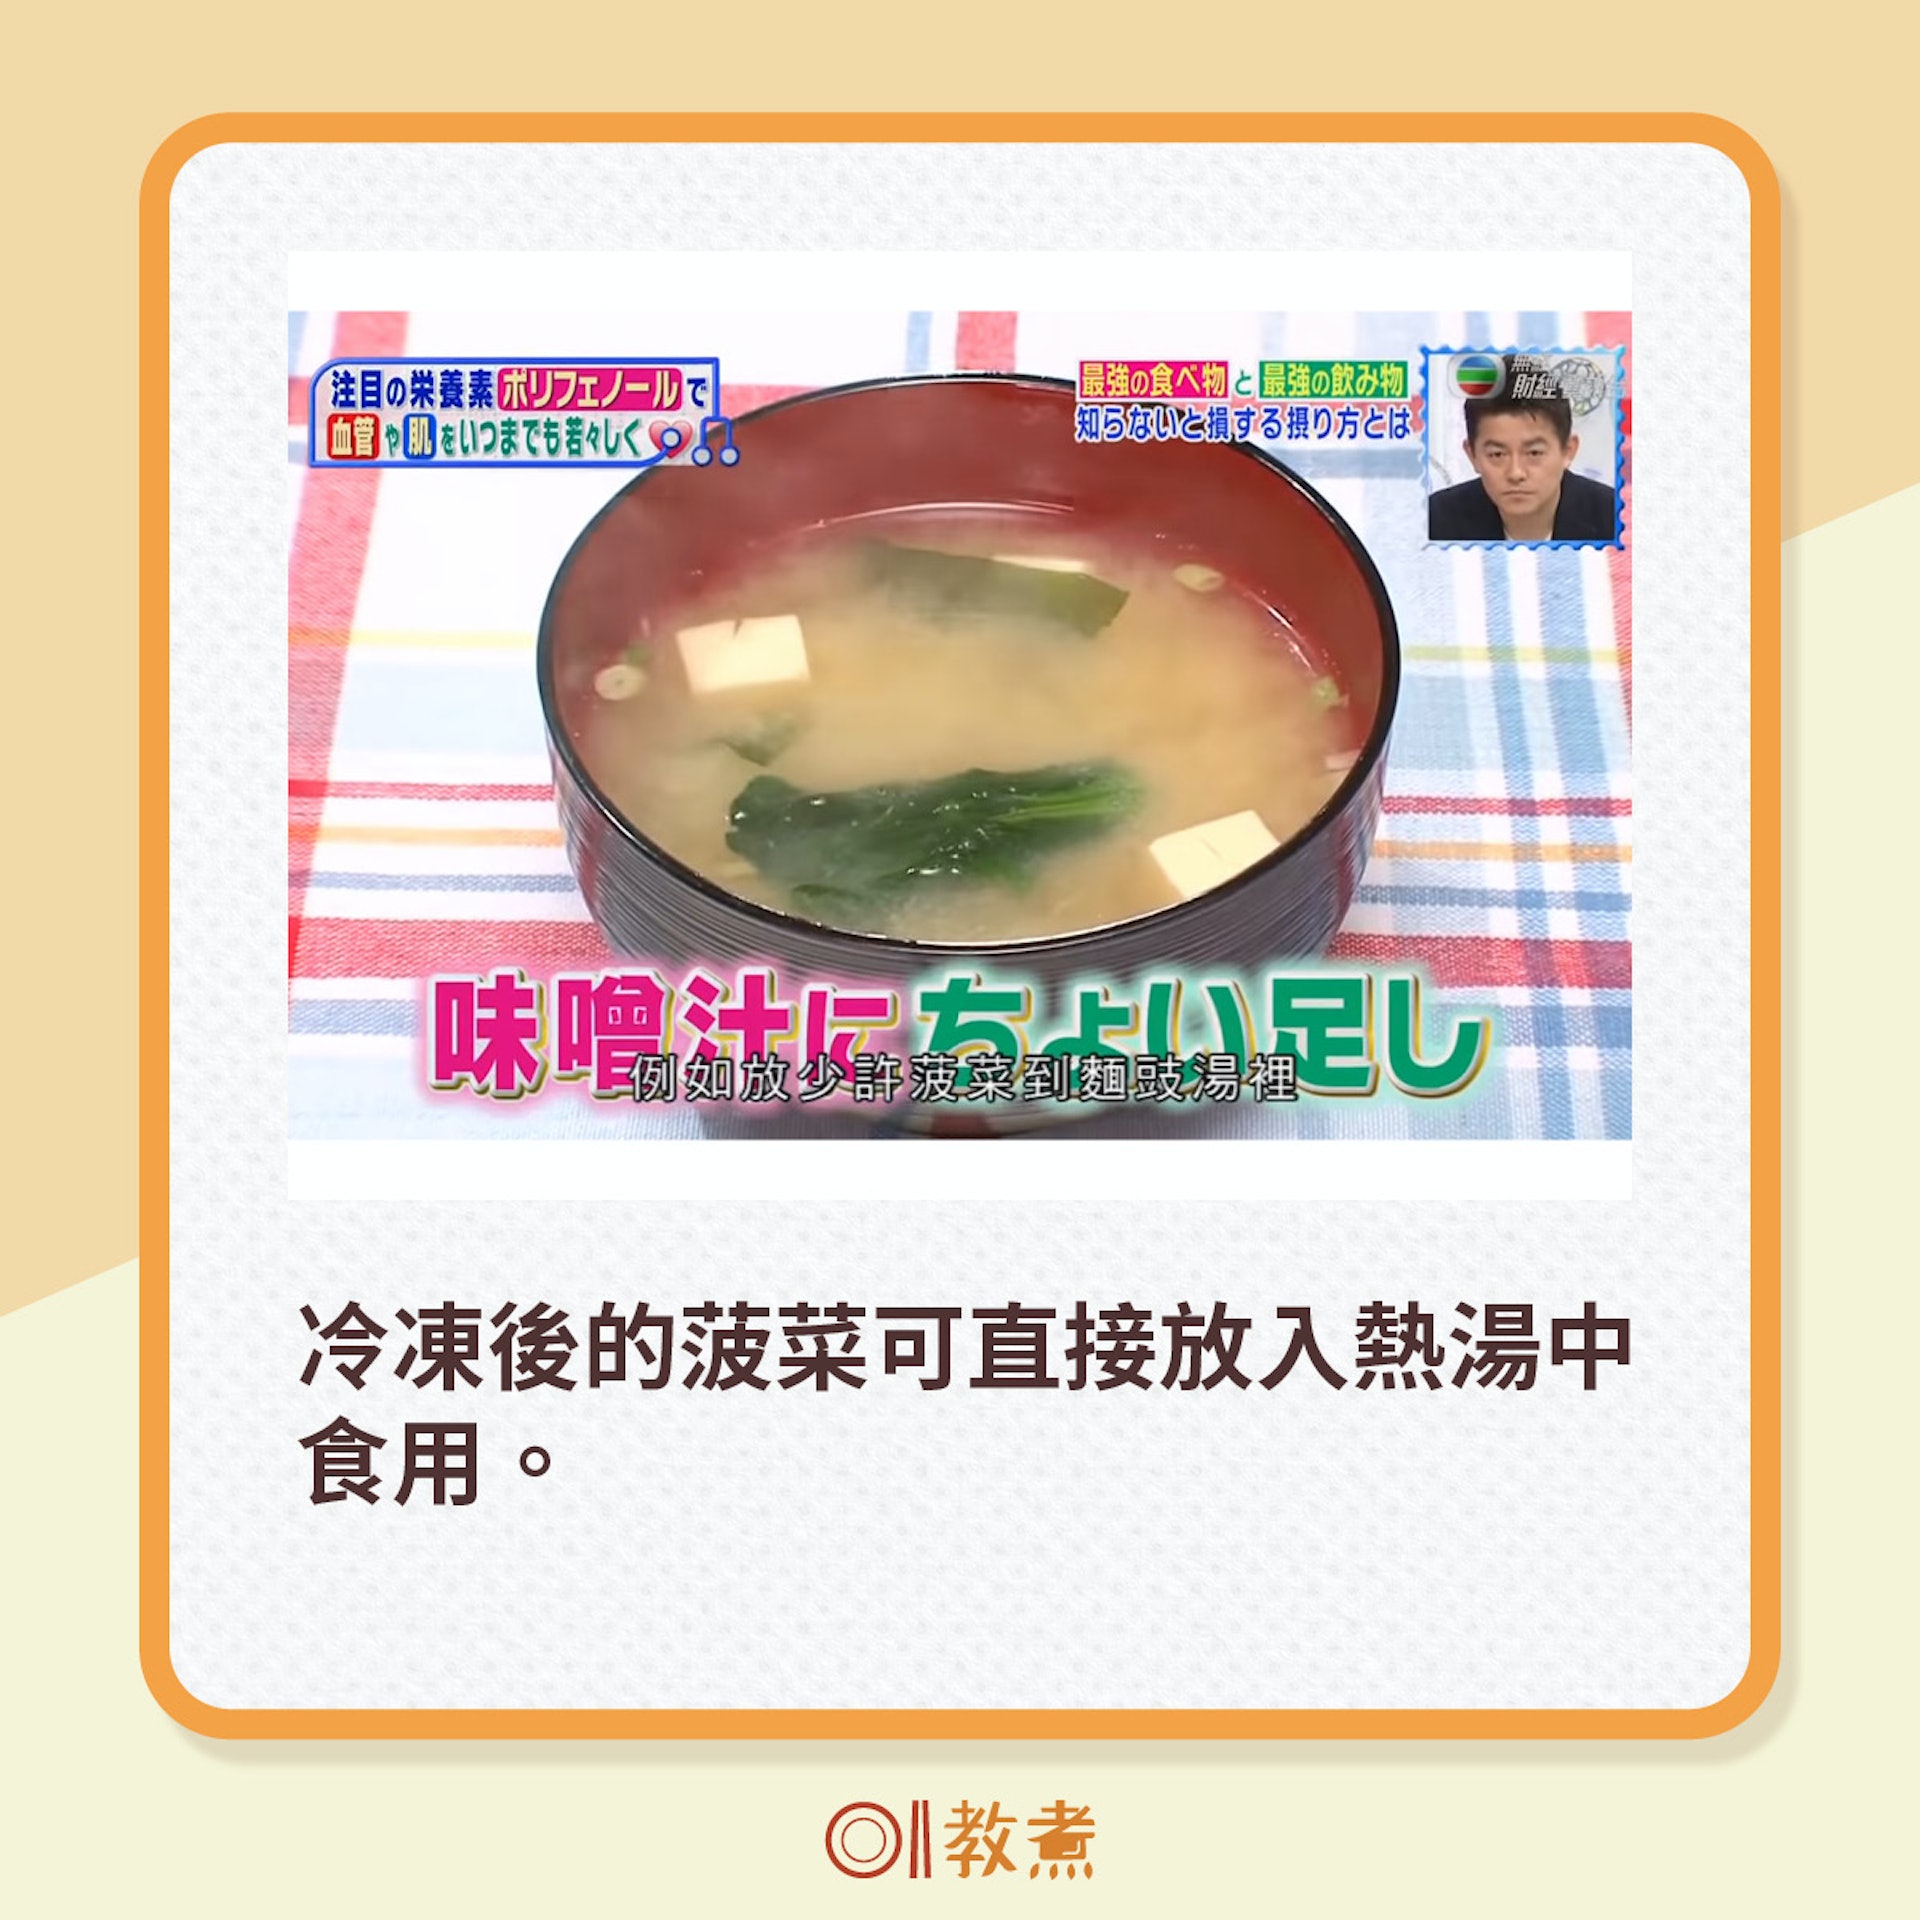 冷凍後的菠菜可直接放入熱湯中食用。（《尋找主診醫生》截圖）